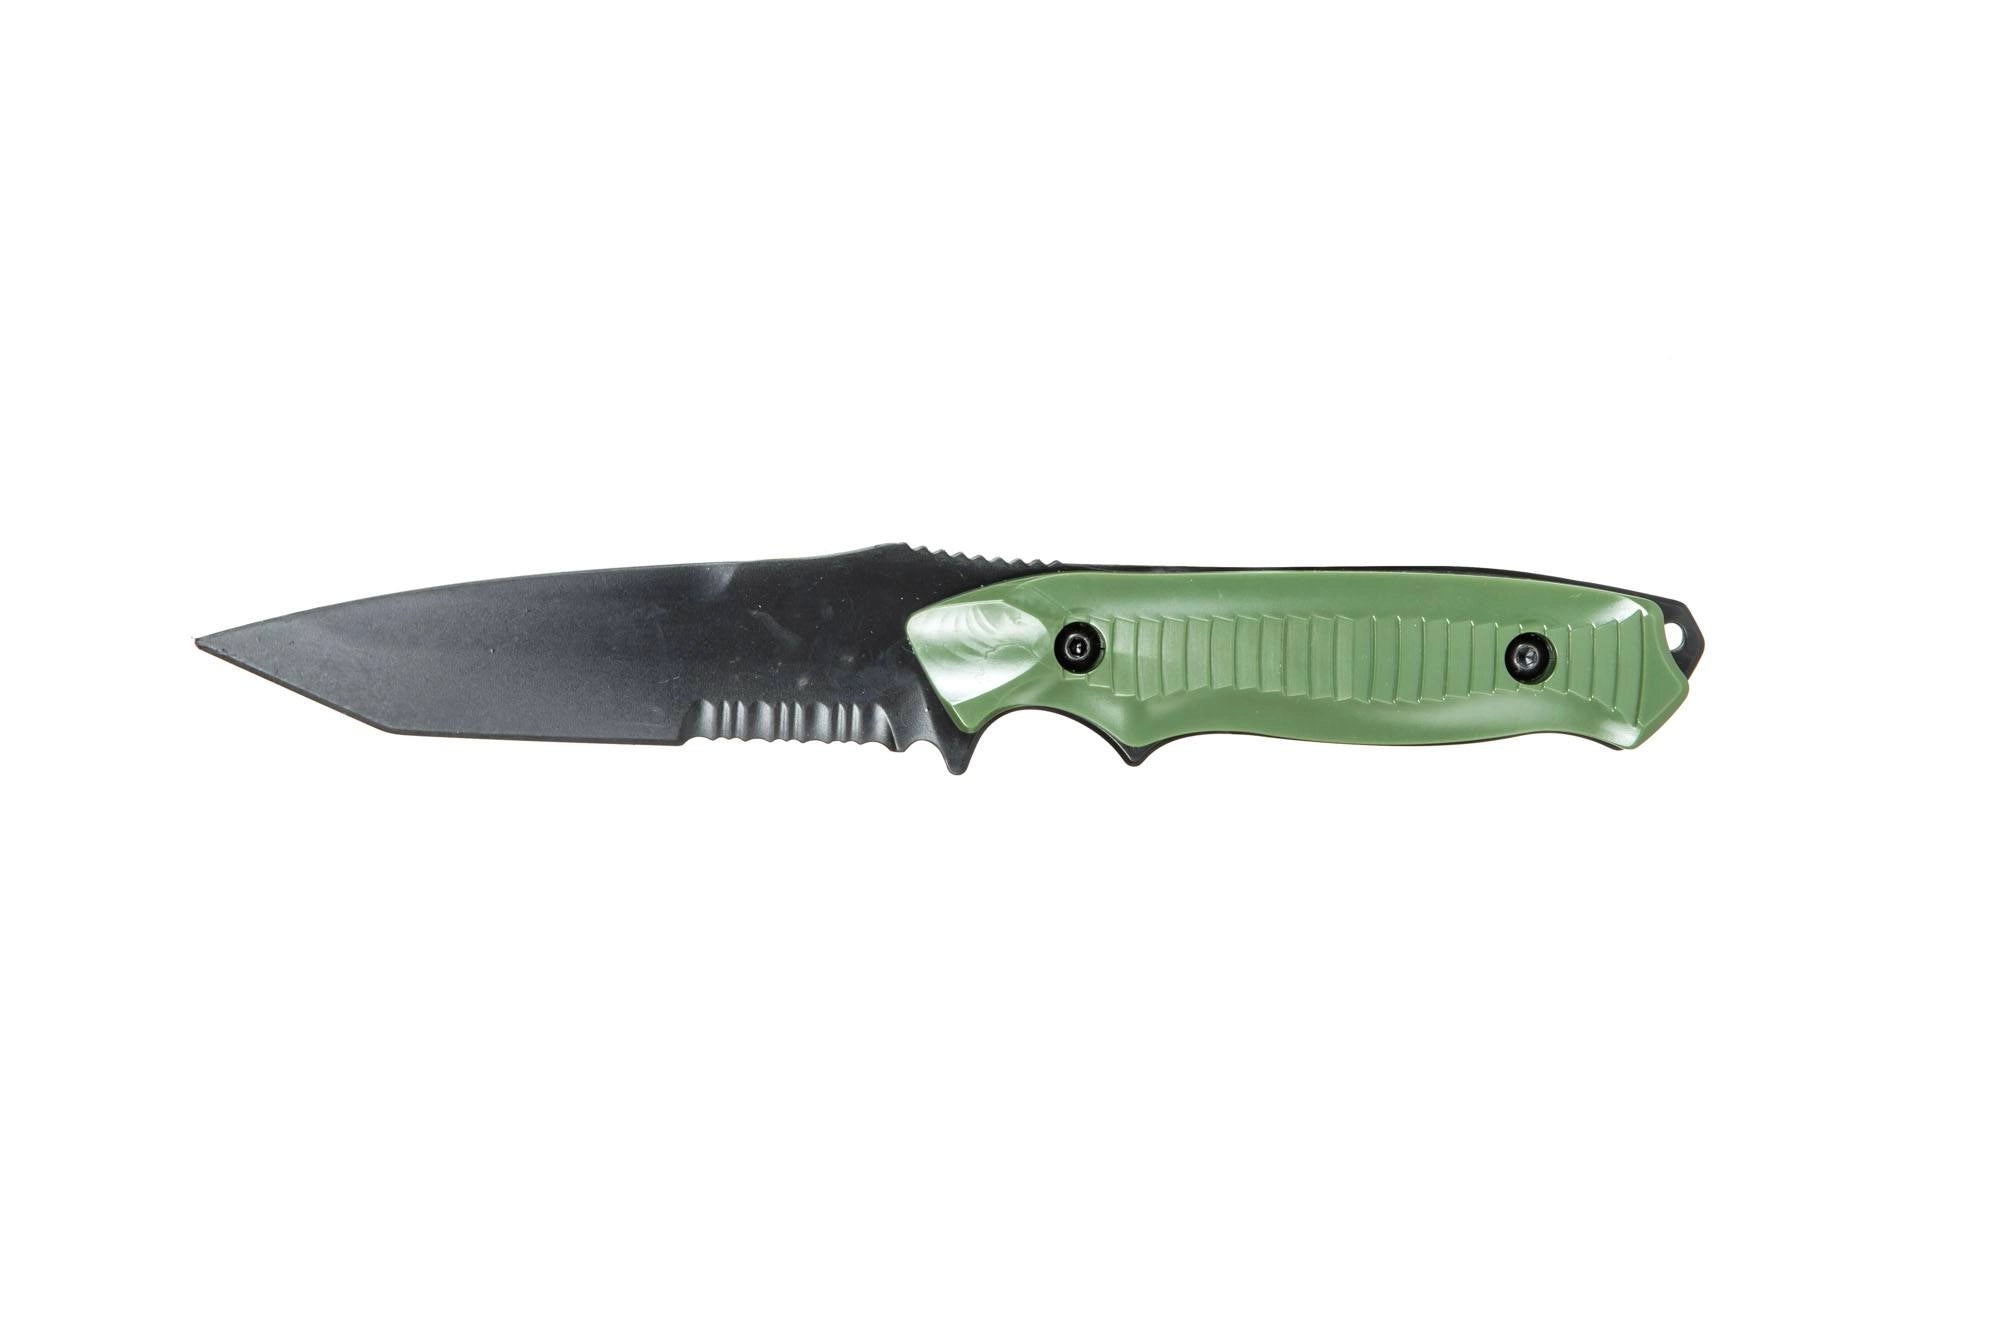 TD202 réplique de couteau factice - Olive